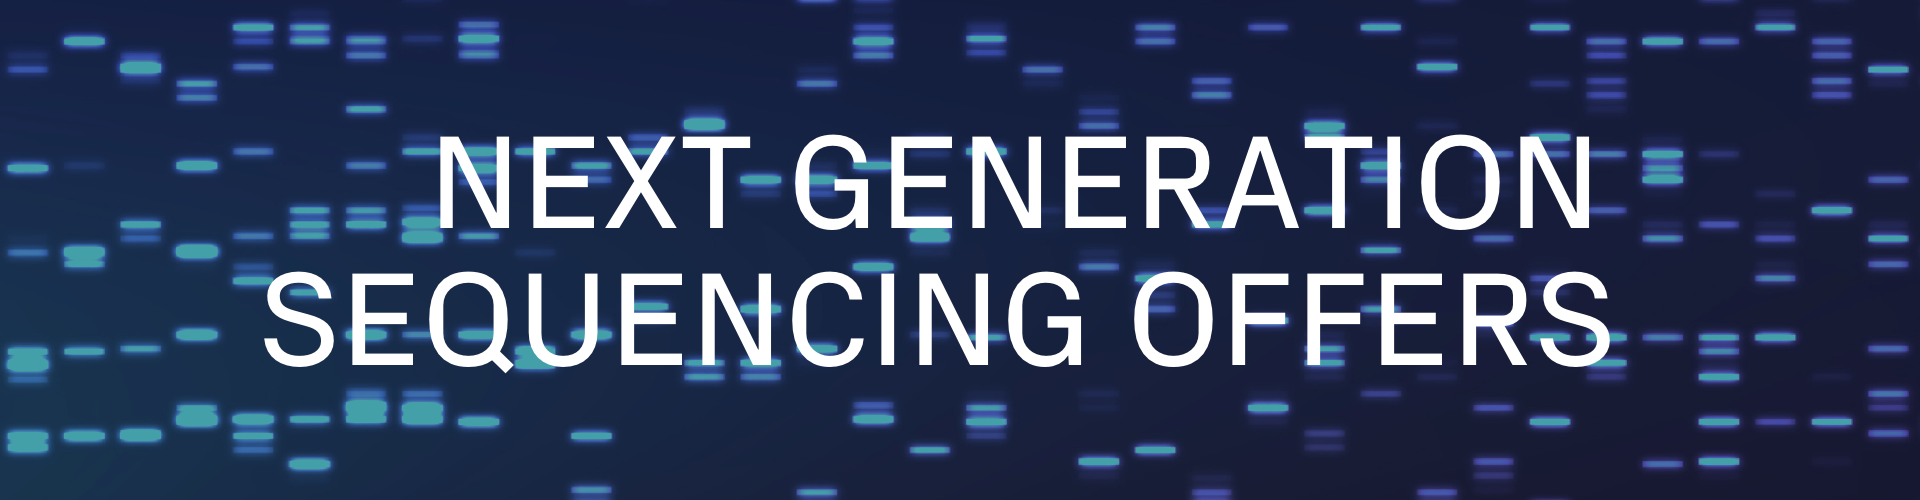 Next Generation Sequencing promos Azenta